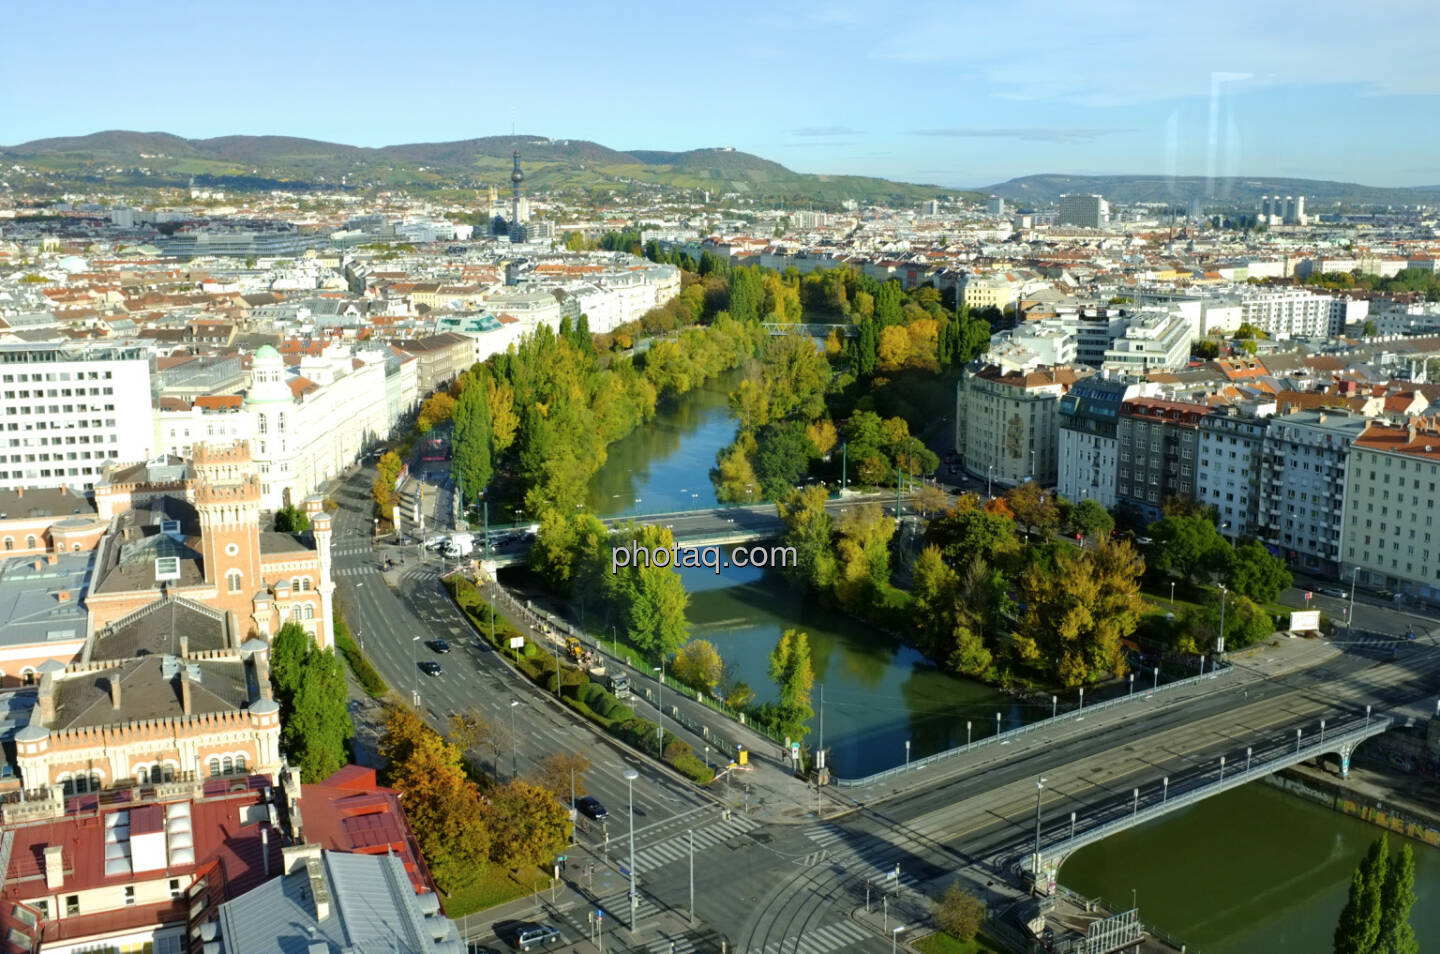 Donaukanal bis ca. Friedensbrücke, dort ist das Office von http://www.finanzmarktfoto.at